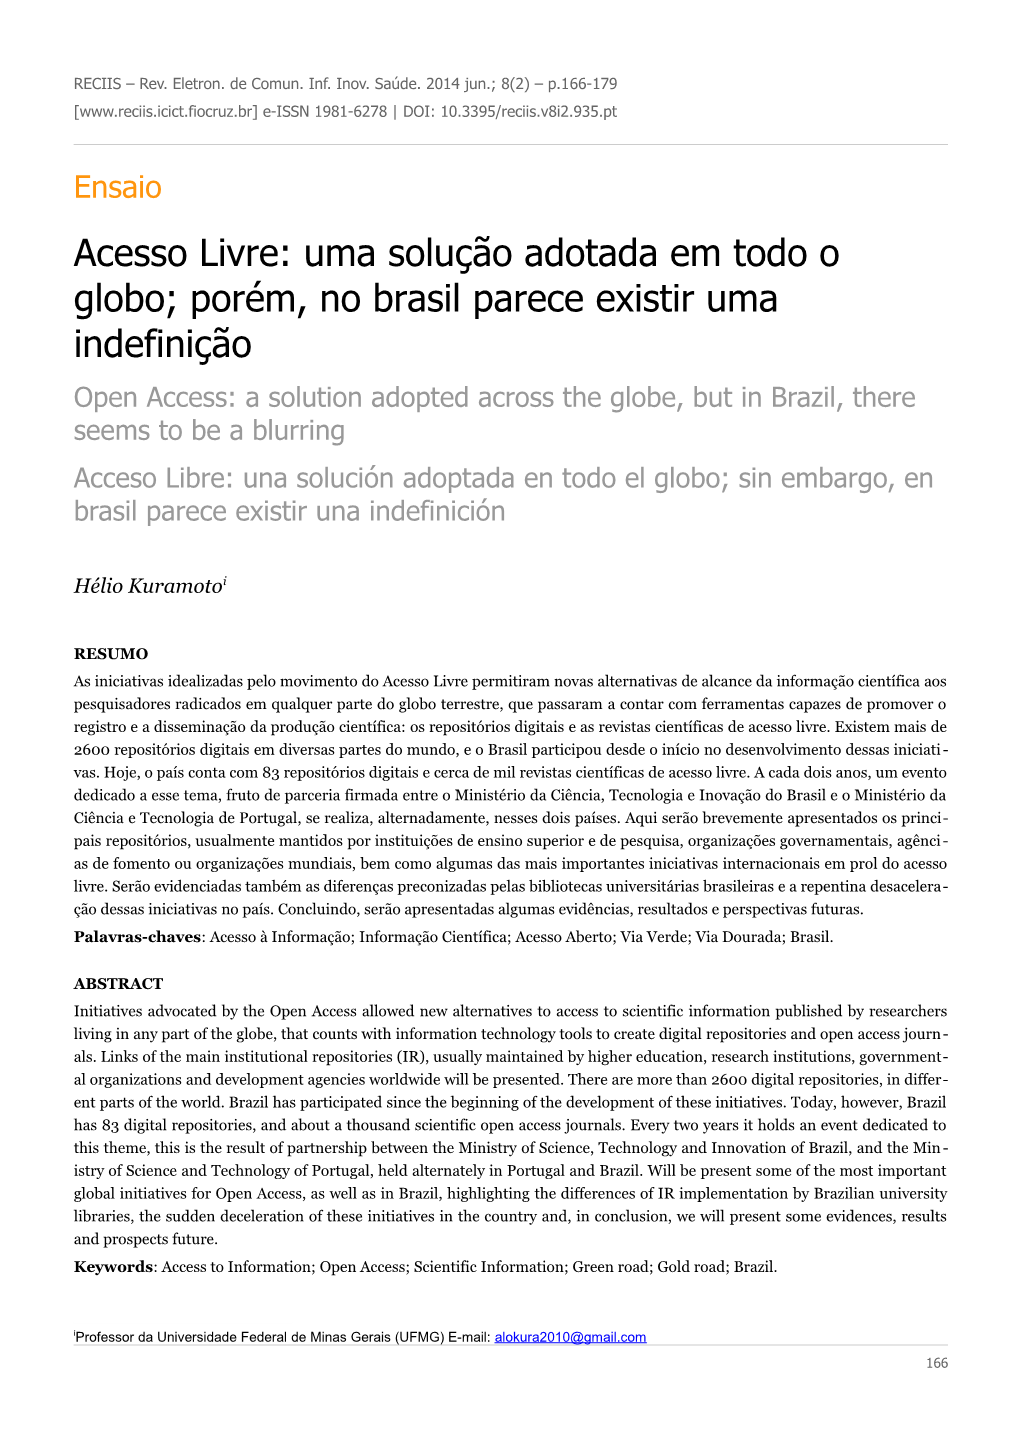 Acesso Livre: Uma Solução Adotada Em Todo O Globo; Porém, No Brasil Parece Existir Uma Indefinição